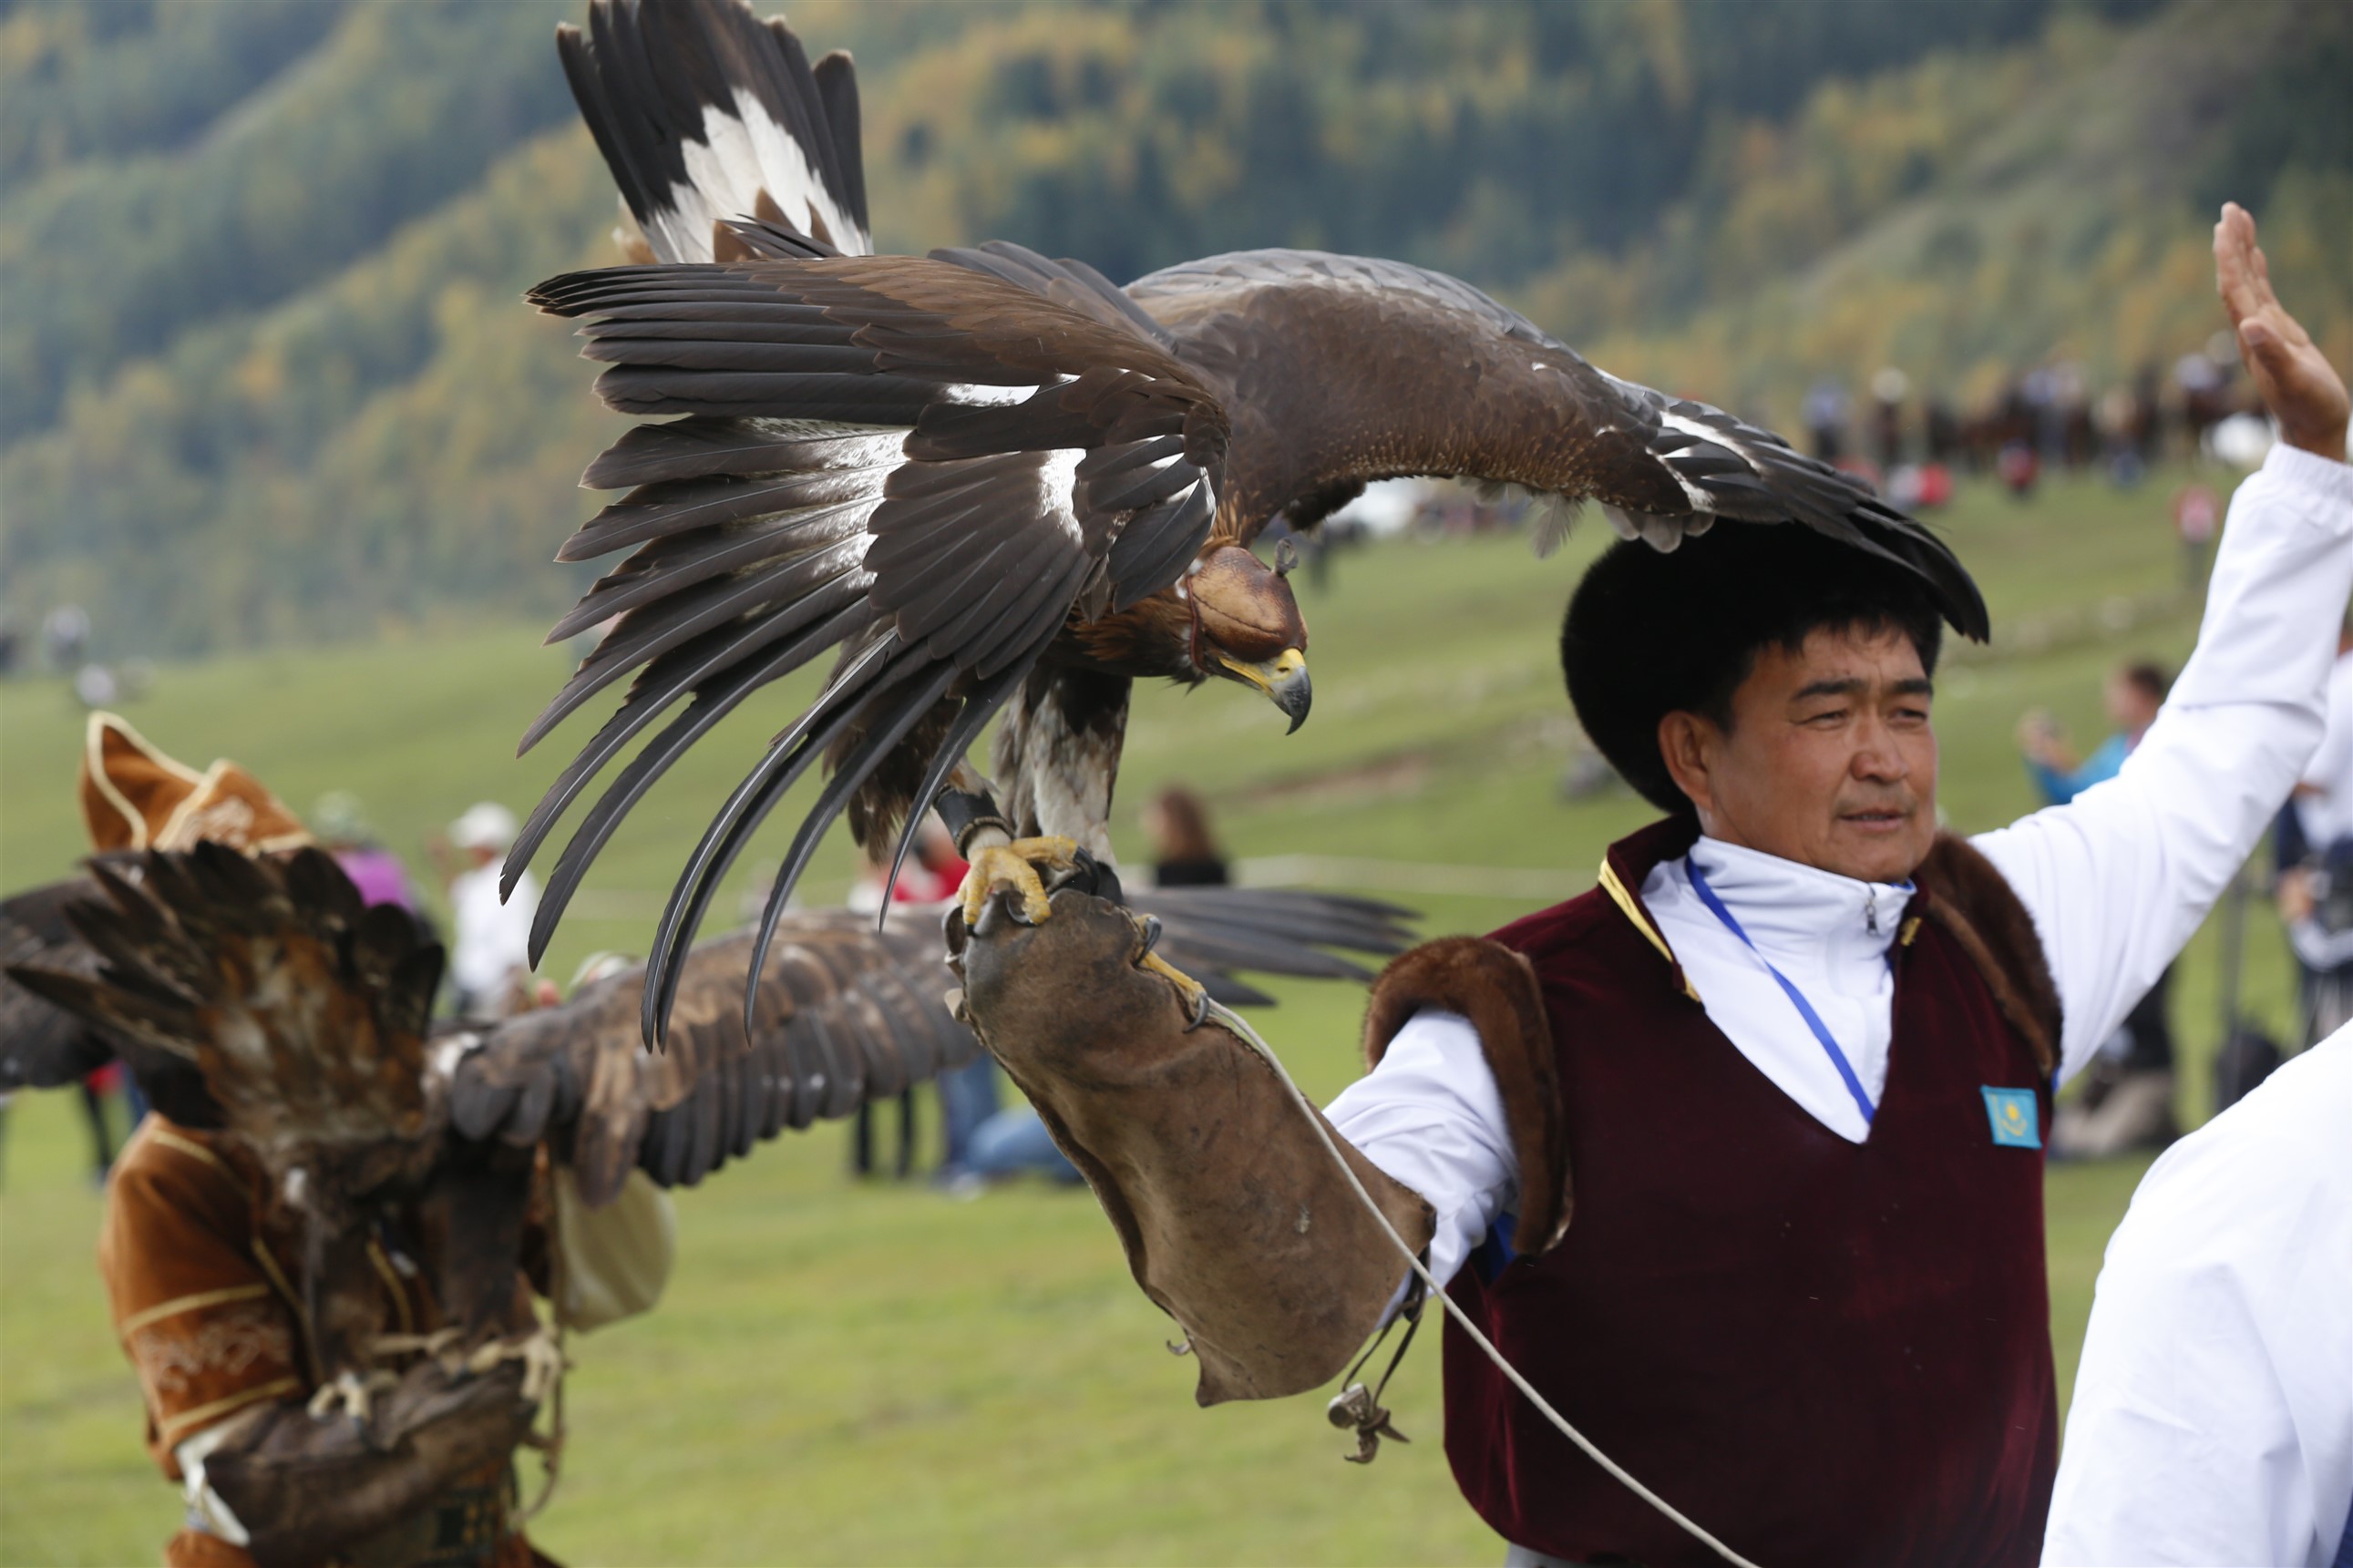 A hagyományos vadászat szám egyik versenyzője a sólymával Csolpon-Atában, a versenyek harmadik napján (Fotó: Roman Gainanov / NurPhoto / AFP)